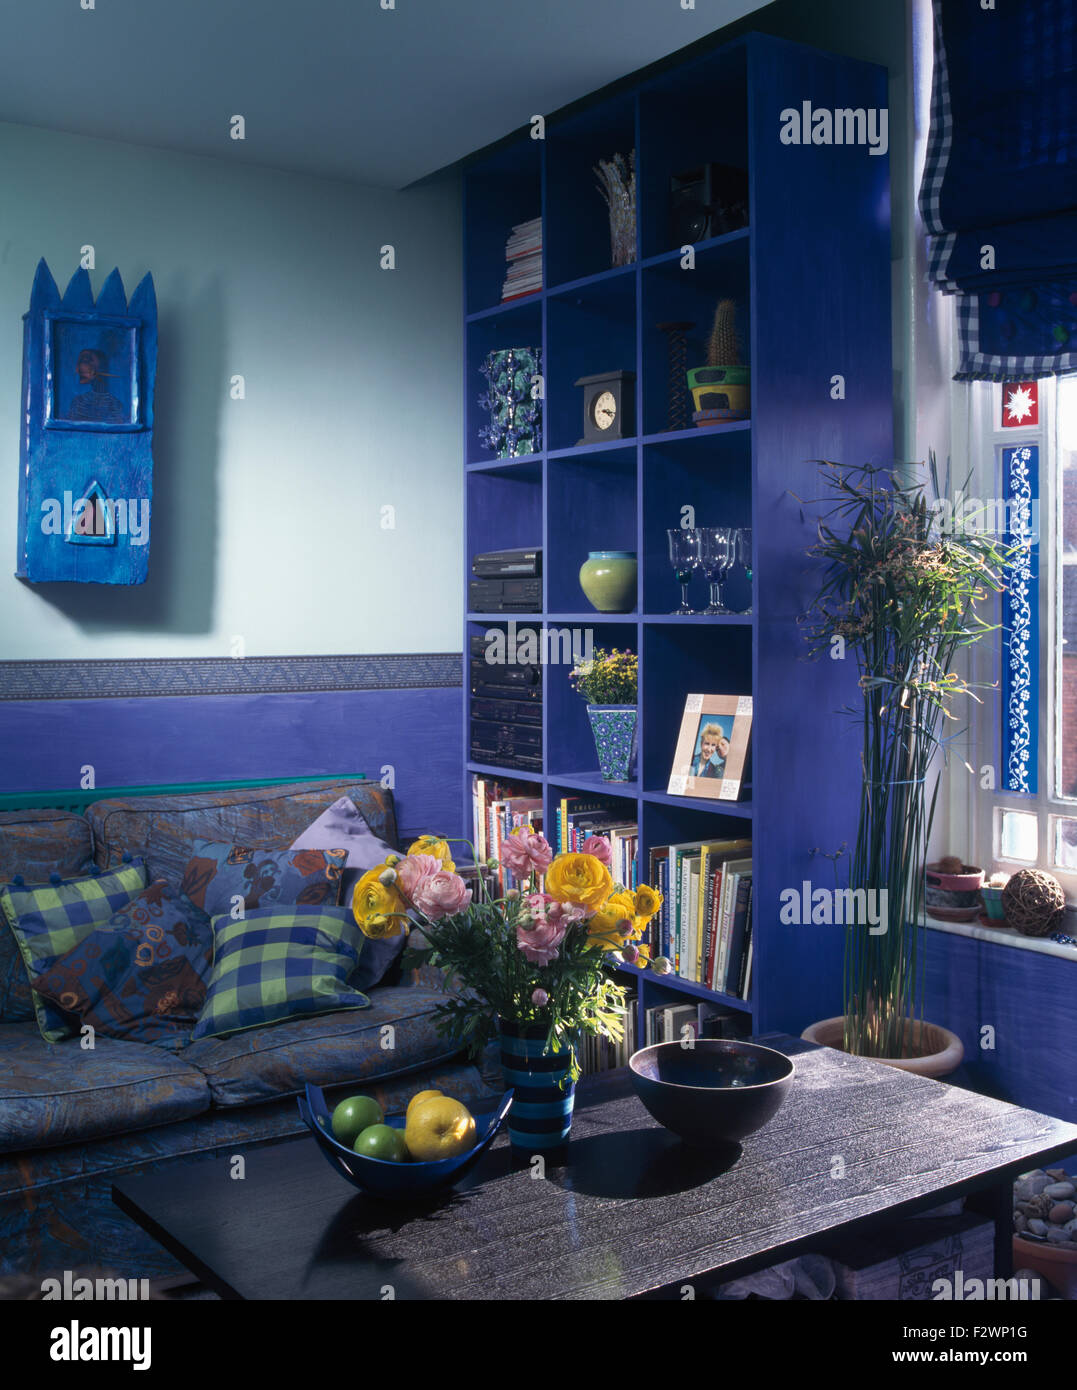 Kleine blau bemalte Wandschrank und leuchtend blaue Cube Regale in hell blau Wohnzimmer der neunziger Jahre Stockfoto